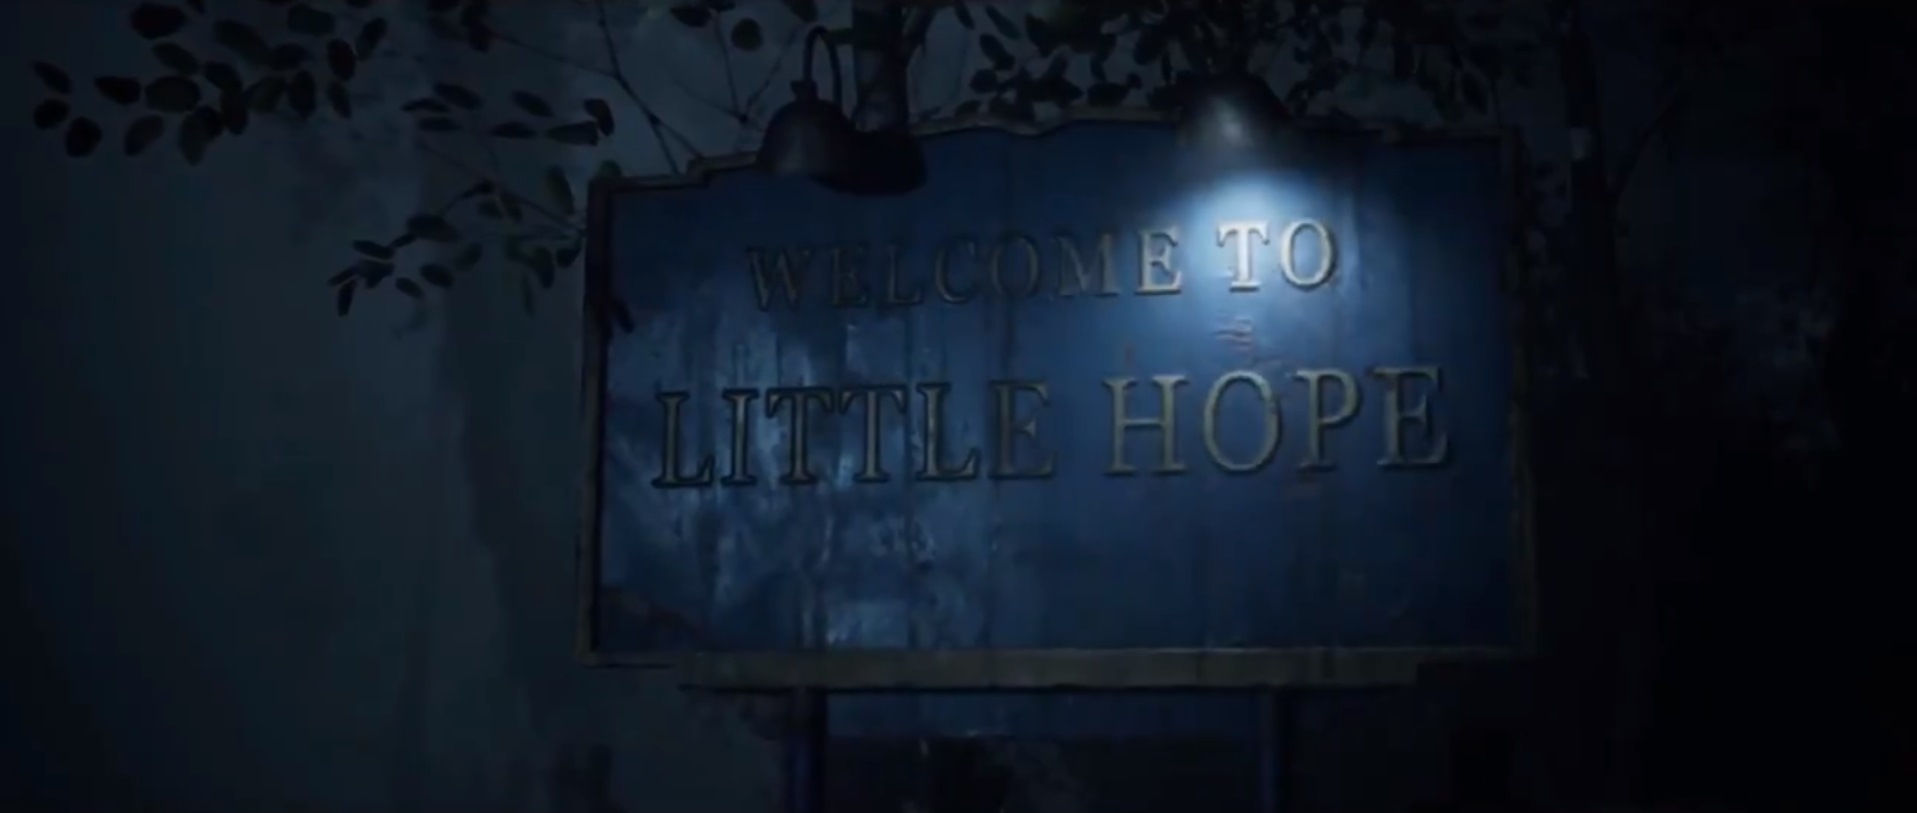 Little Hope, angsuran kedua dari The Dark Pictures Anthology, akan tiba pada tahun 2020